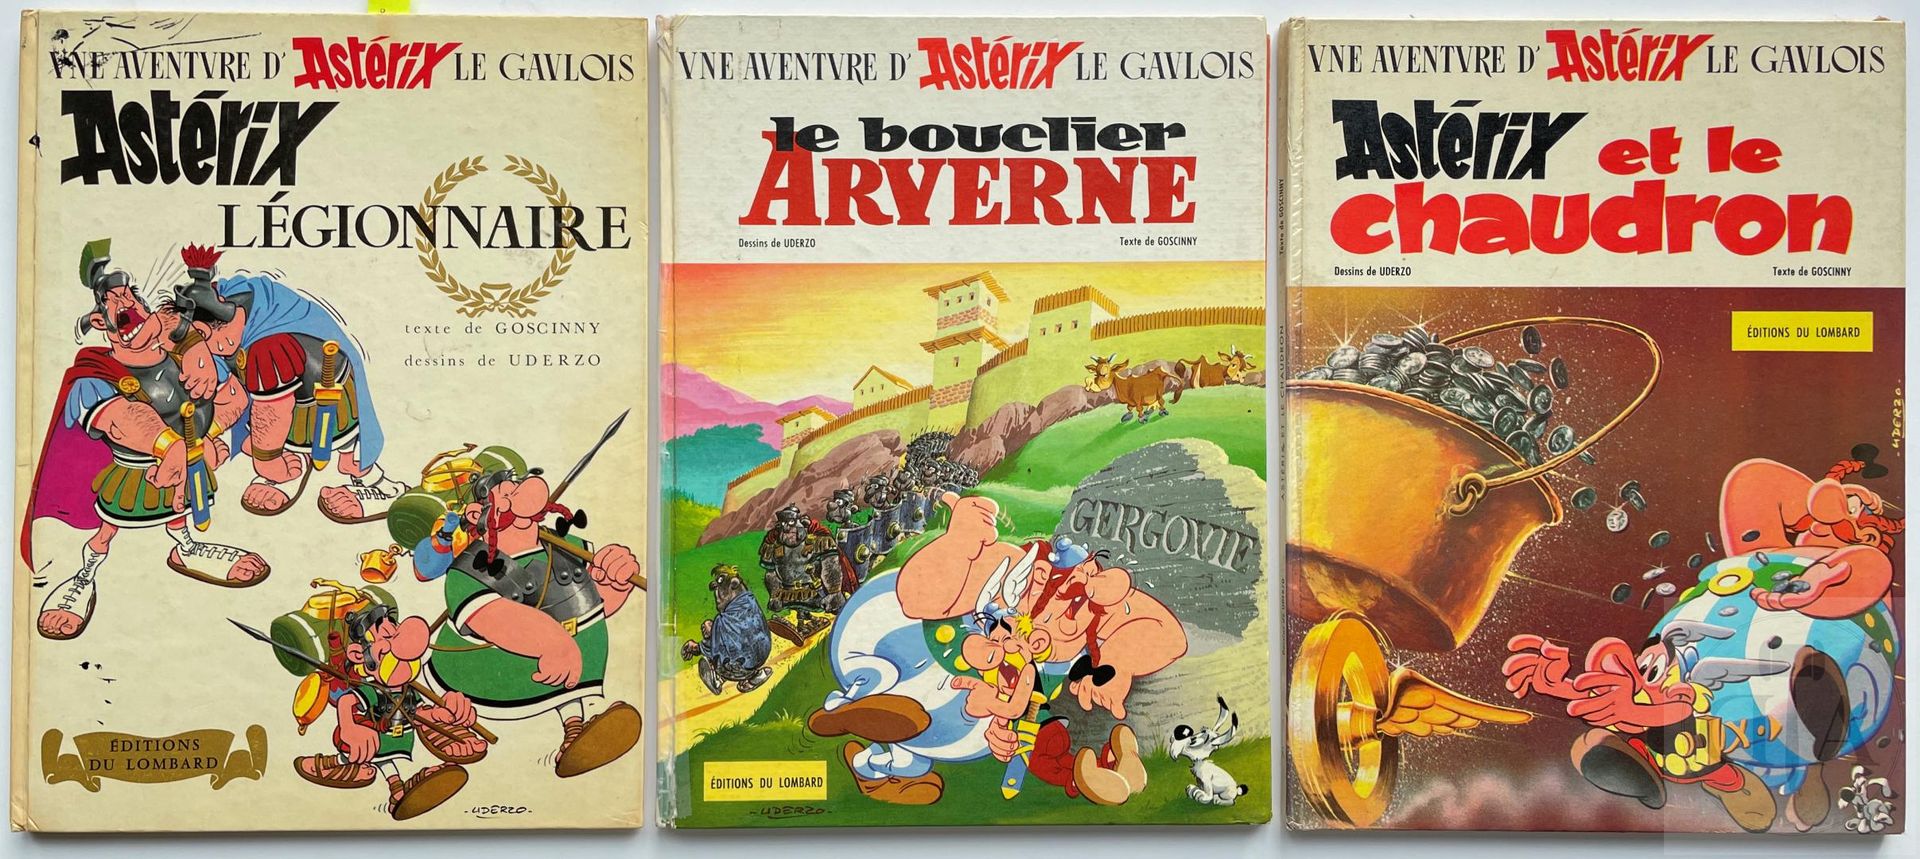 Null Uderzo/Asterix e Obelix. Trio di album di EO: 

- T10 "Asterix legionnaire"&hellip;